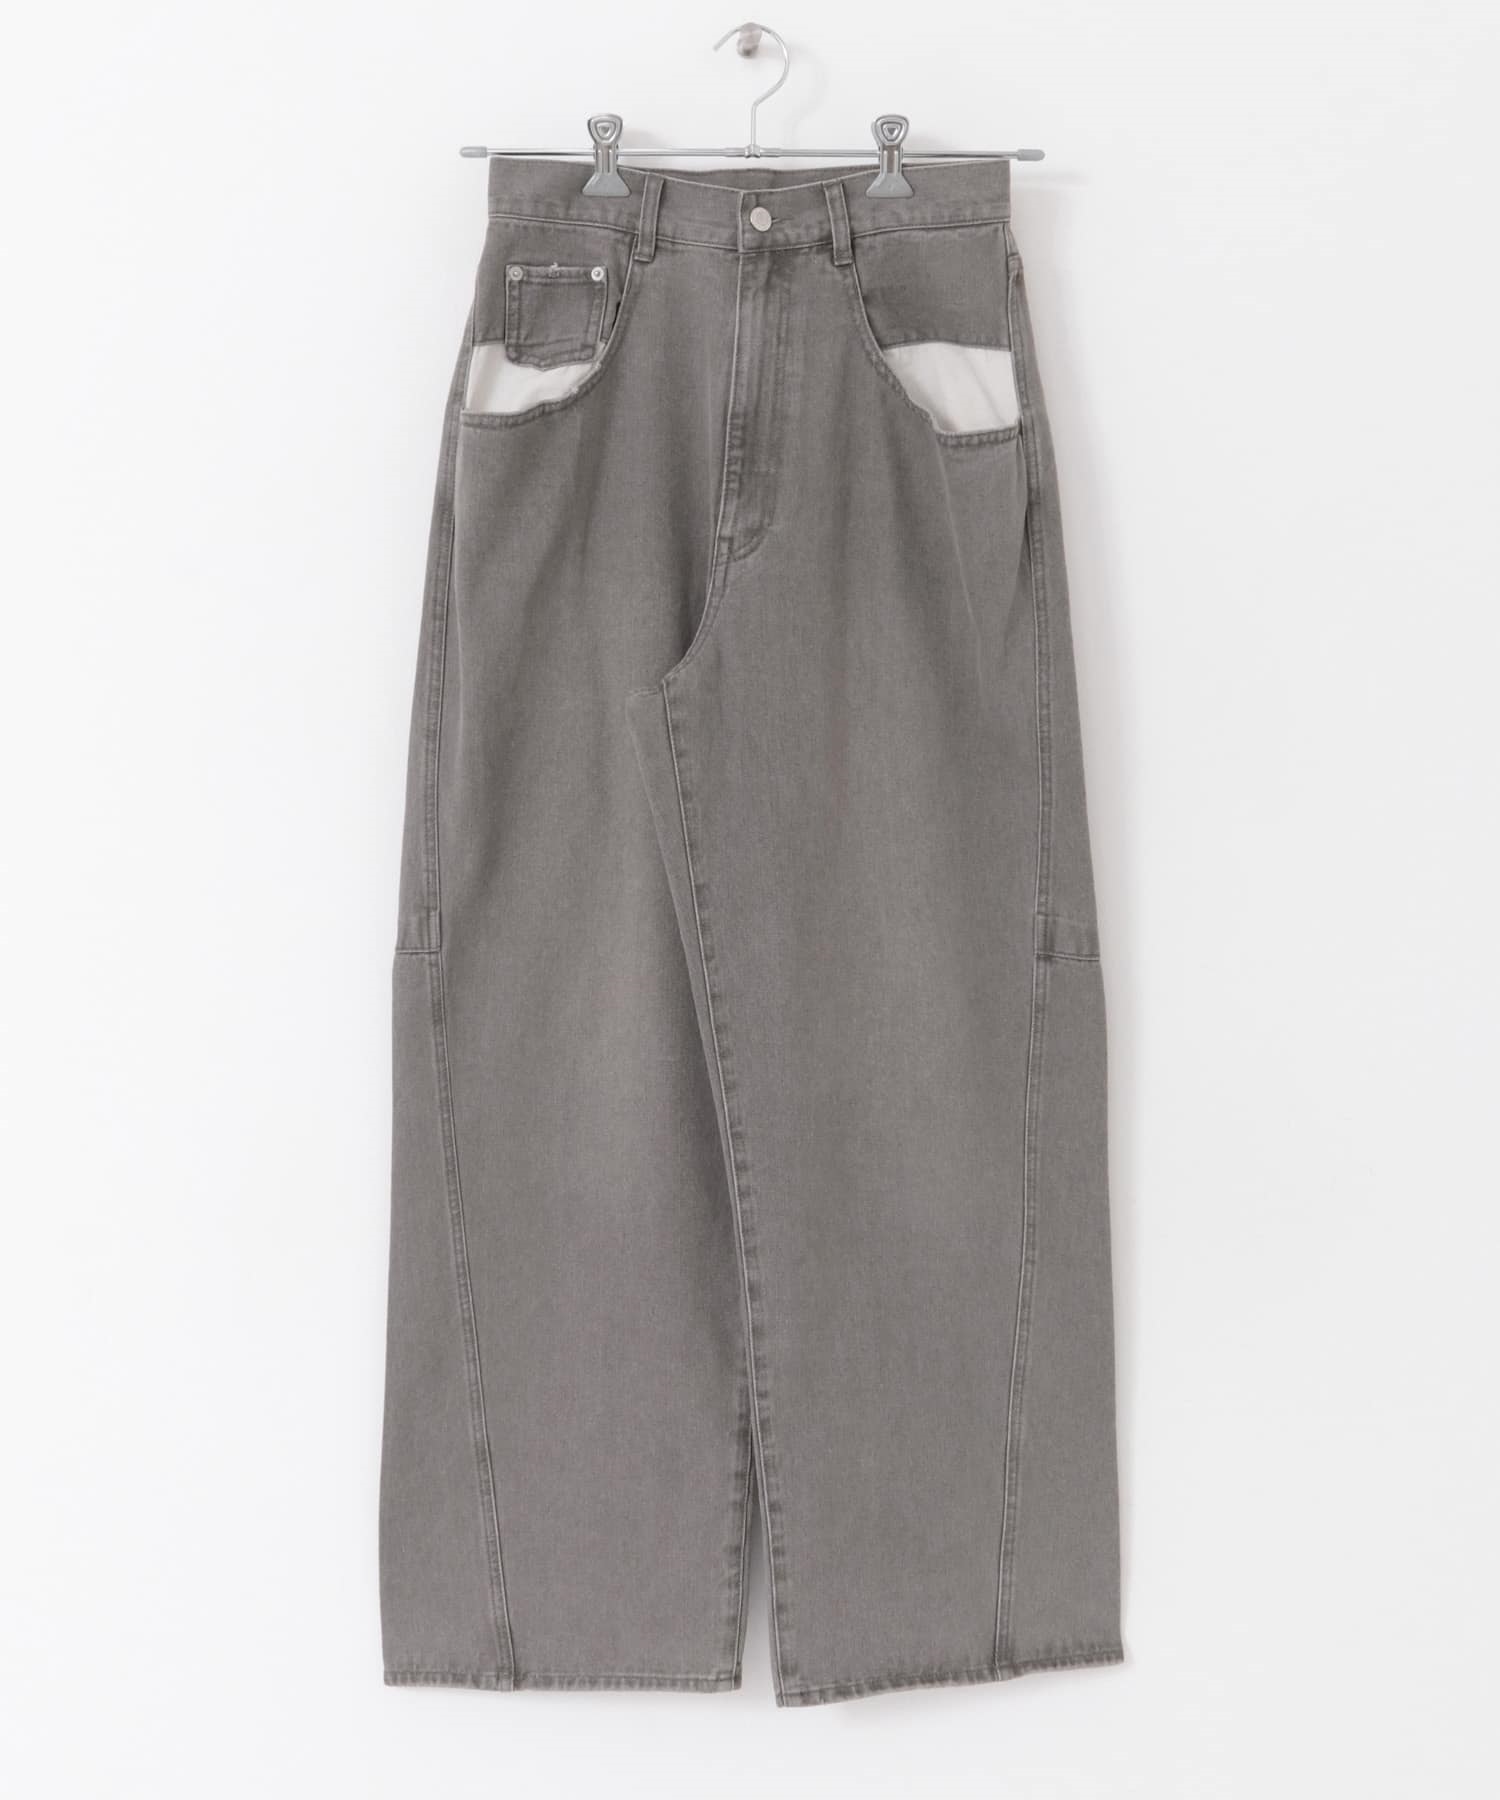 大口袋設計牛仔褲(灰色-34-GRAY)